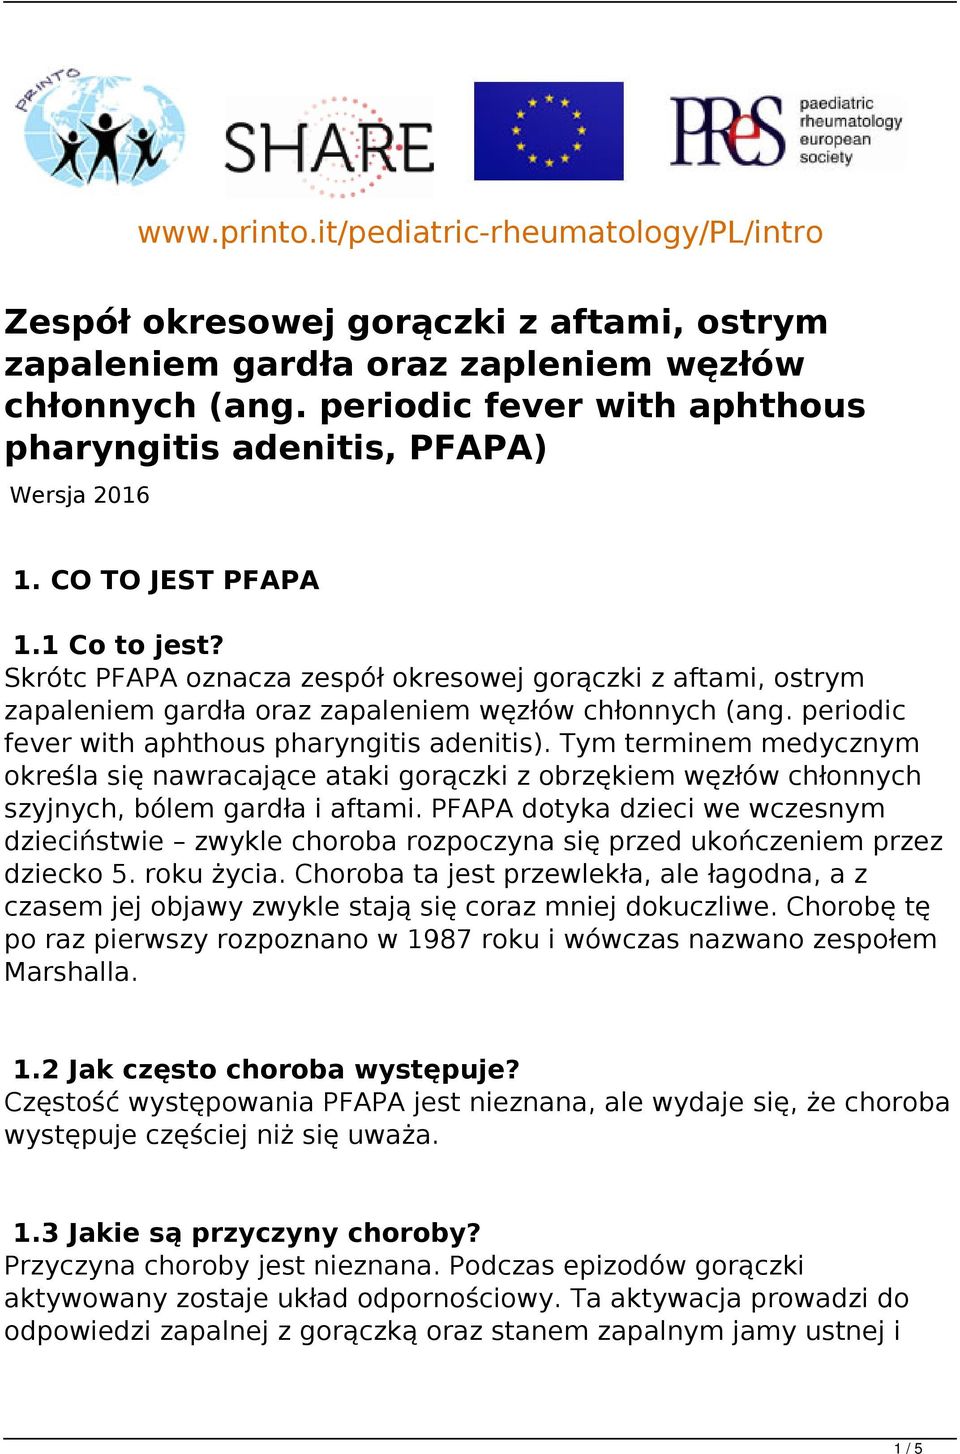 Skrótc PFAPA oznacza zespół okresowej gorączki z aftami, ostrym zapaleniem gardła oraz zapaleniem węzłów chłonnych (ang. periodic fever with aphthous pharyngitis adenitis).